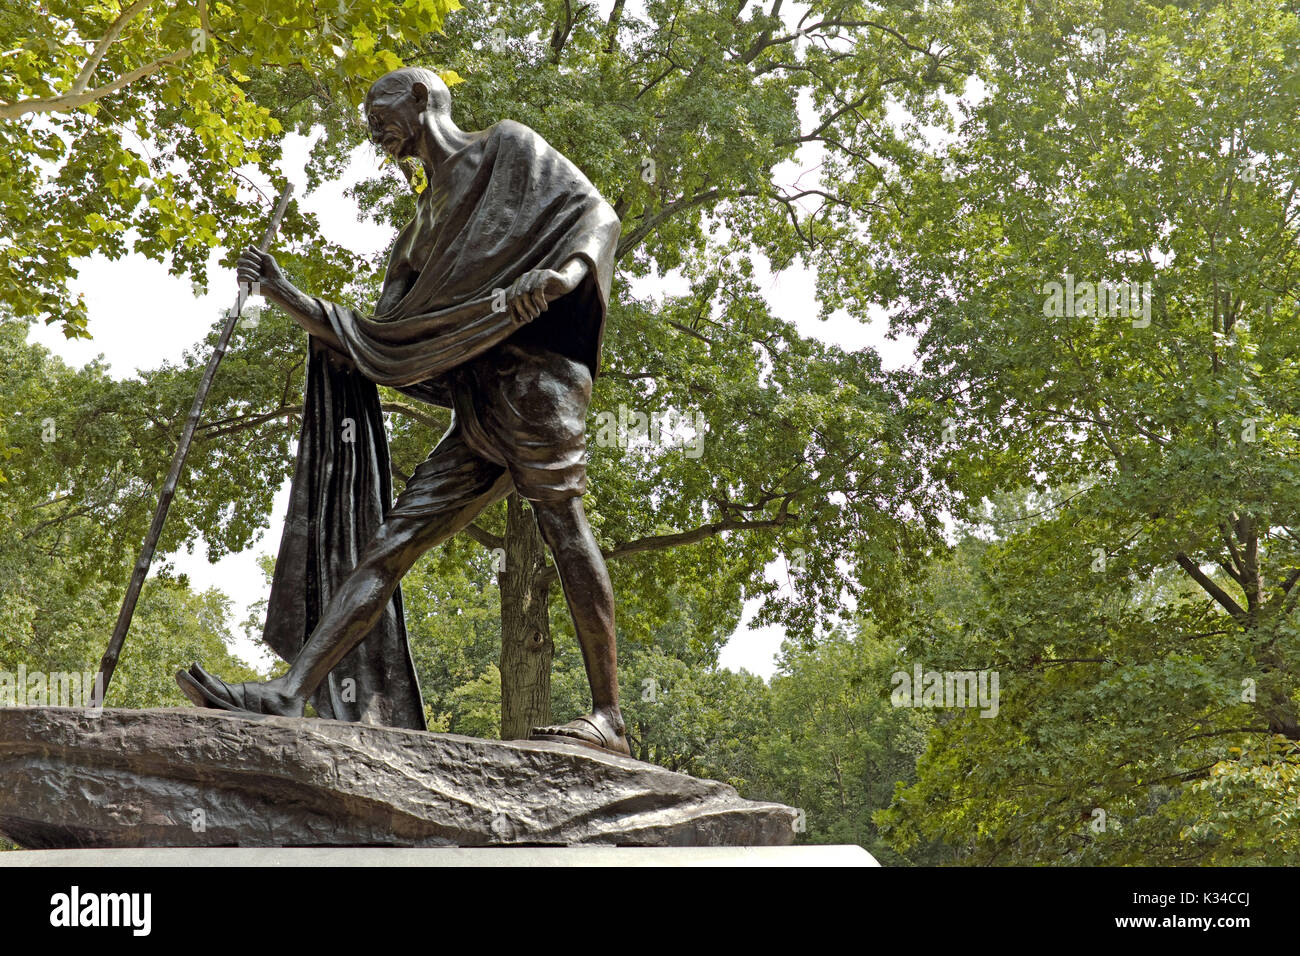 Statue von Mahatma Gandhi im Indien kulturellen Abschnitt Gärten von Cleveland, Ohio, USA Rockefeller Park kulturelle Gärten Stockfoto